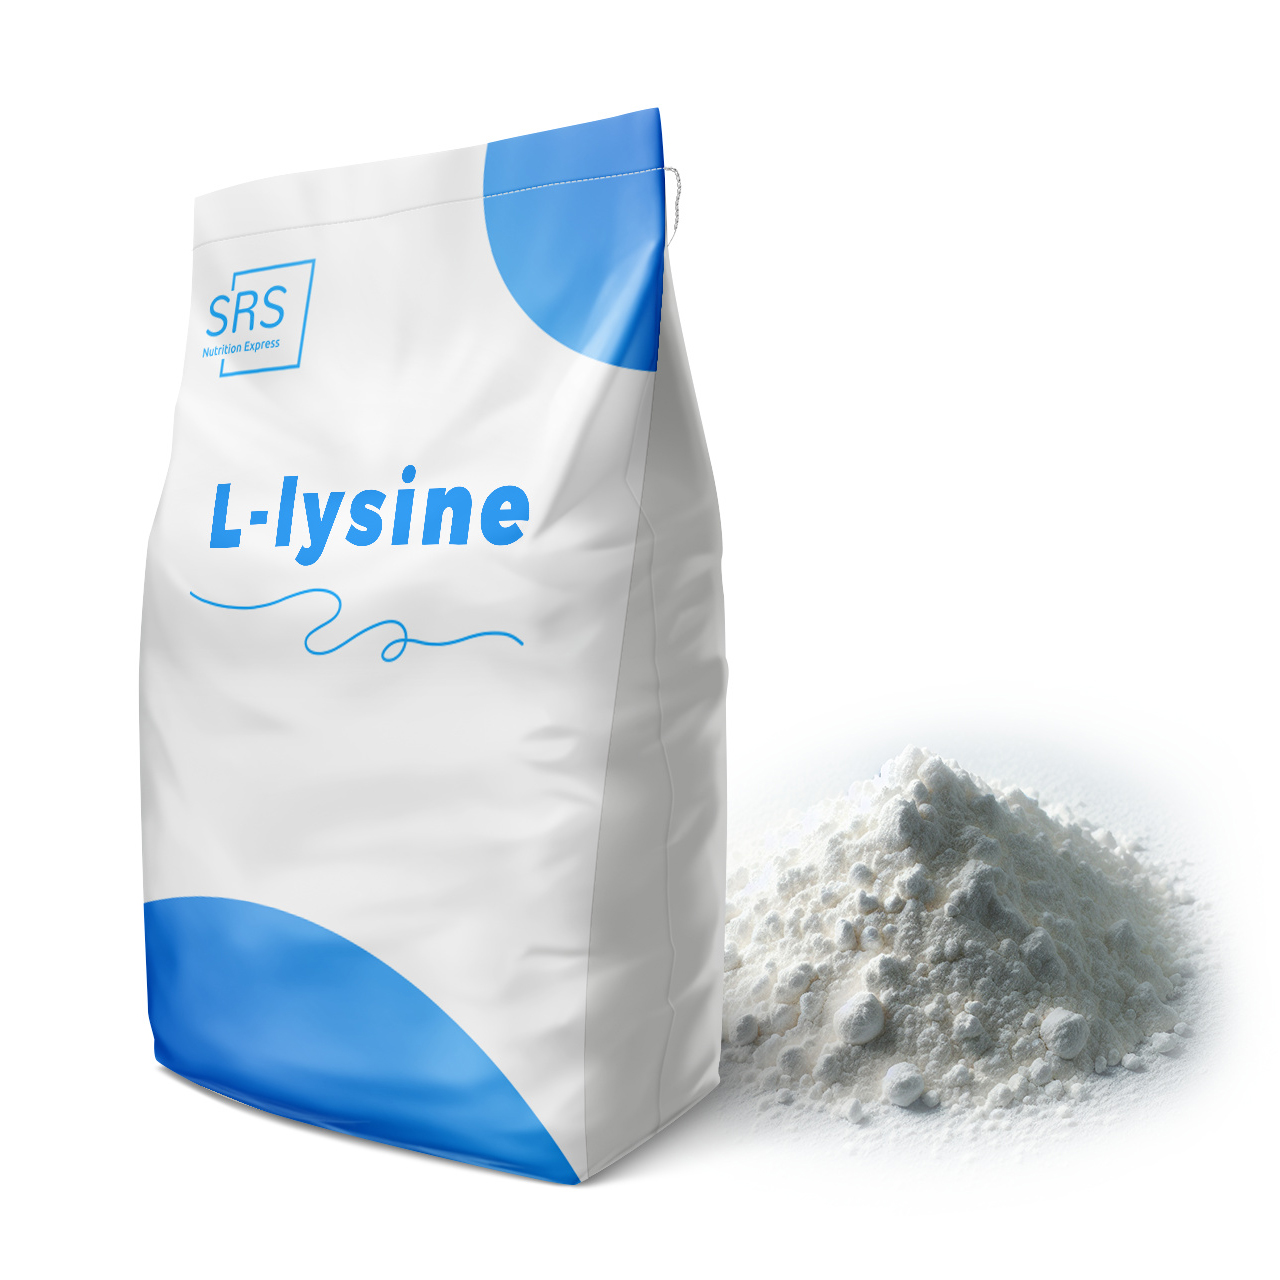 Zeer effectieve L-lysine voor gezond levende aanhangers